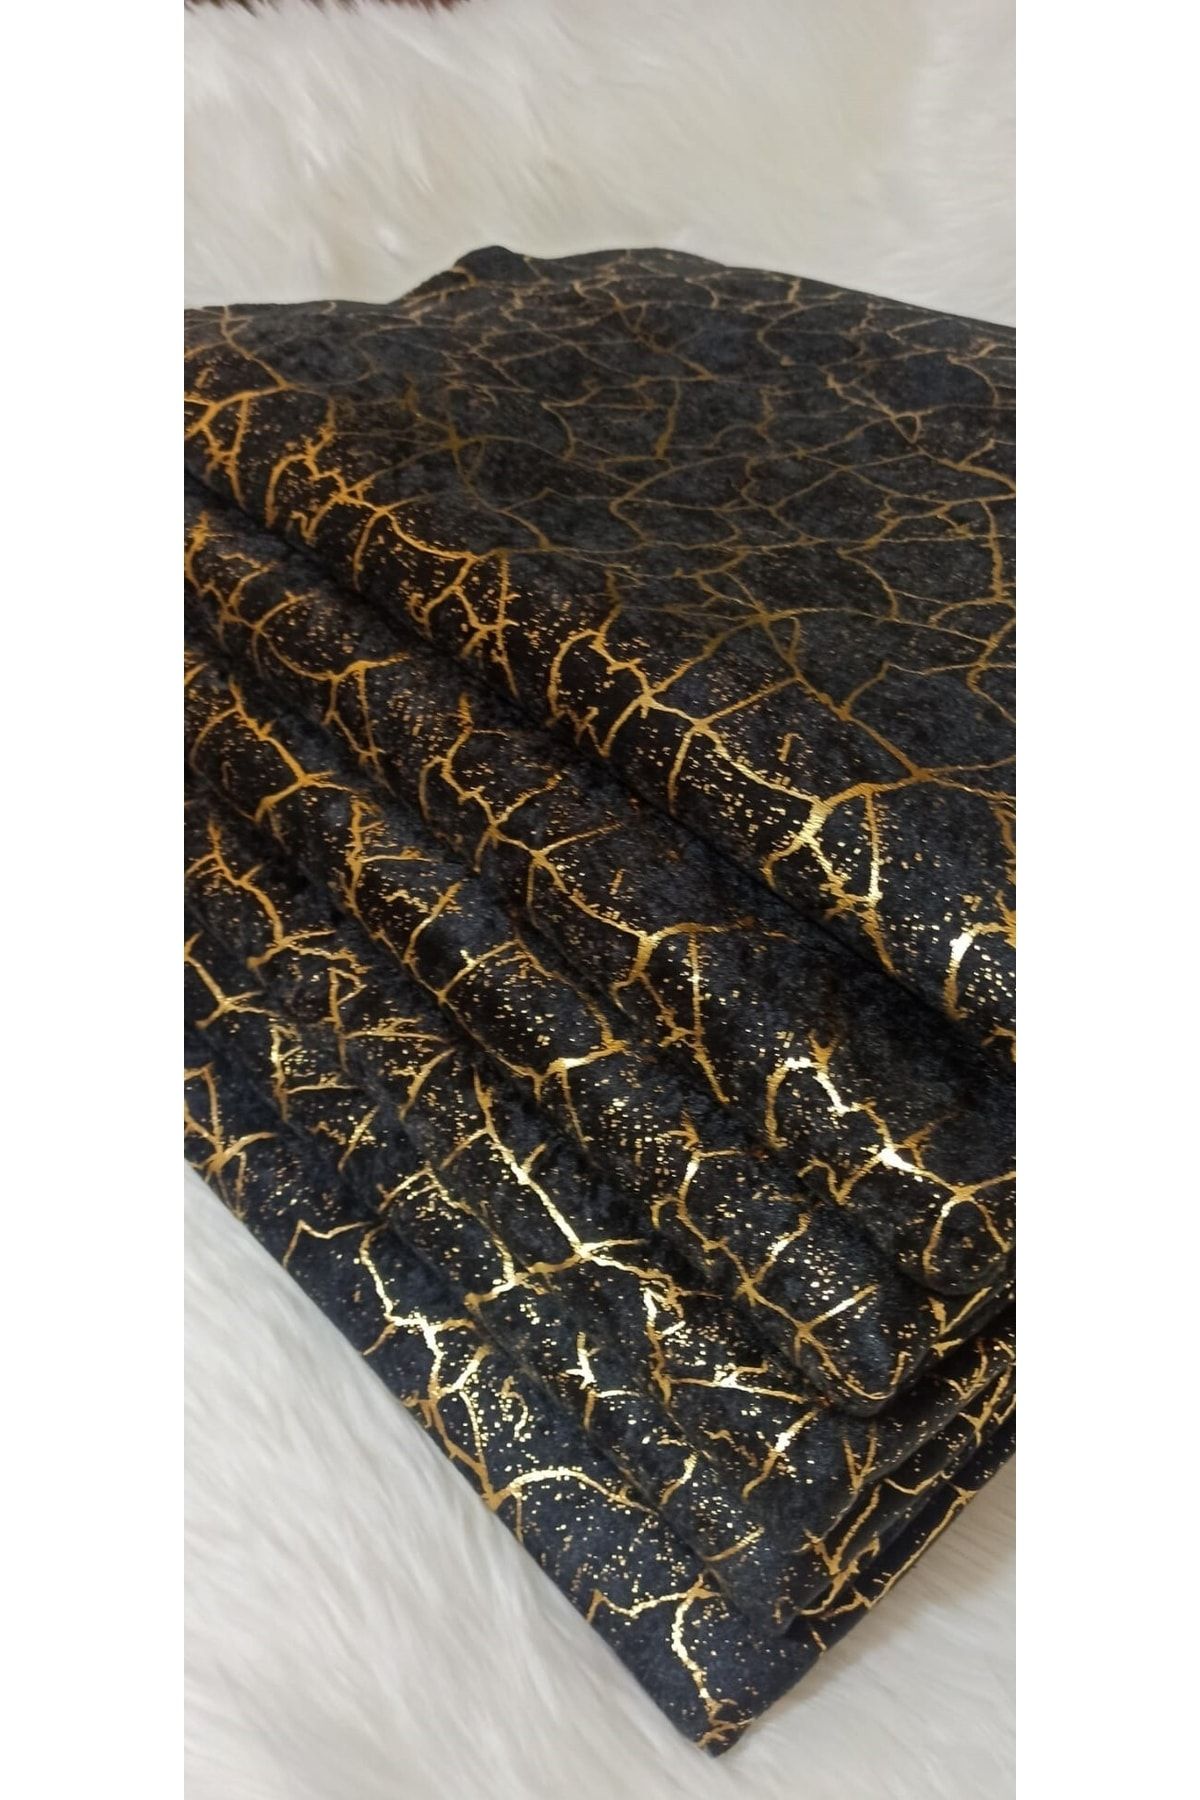 Tekstilsa Siyah Koltuk Çekyat Örtüsü Yenimoda Altın Varaklı Dekoratif Süngerli Koltukörtüsü 1adet